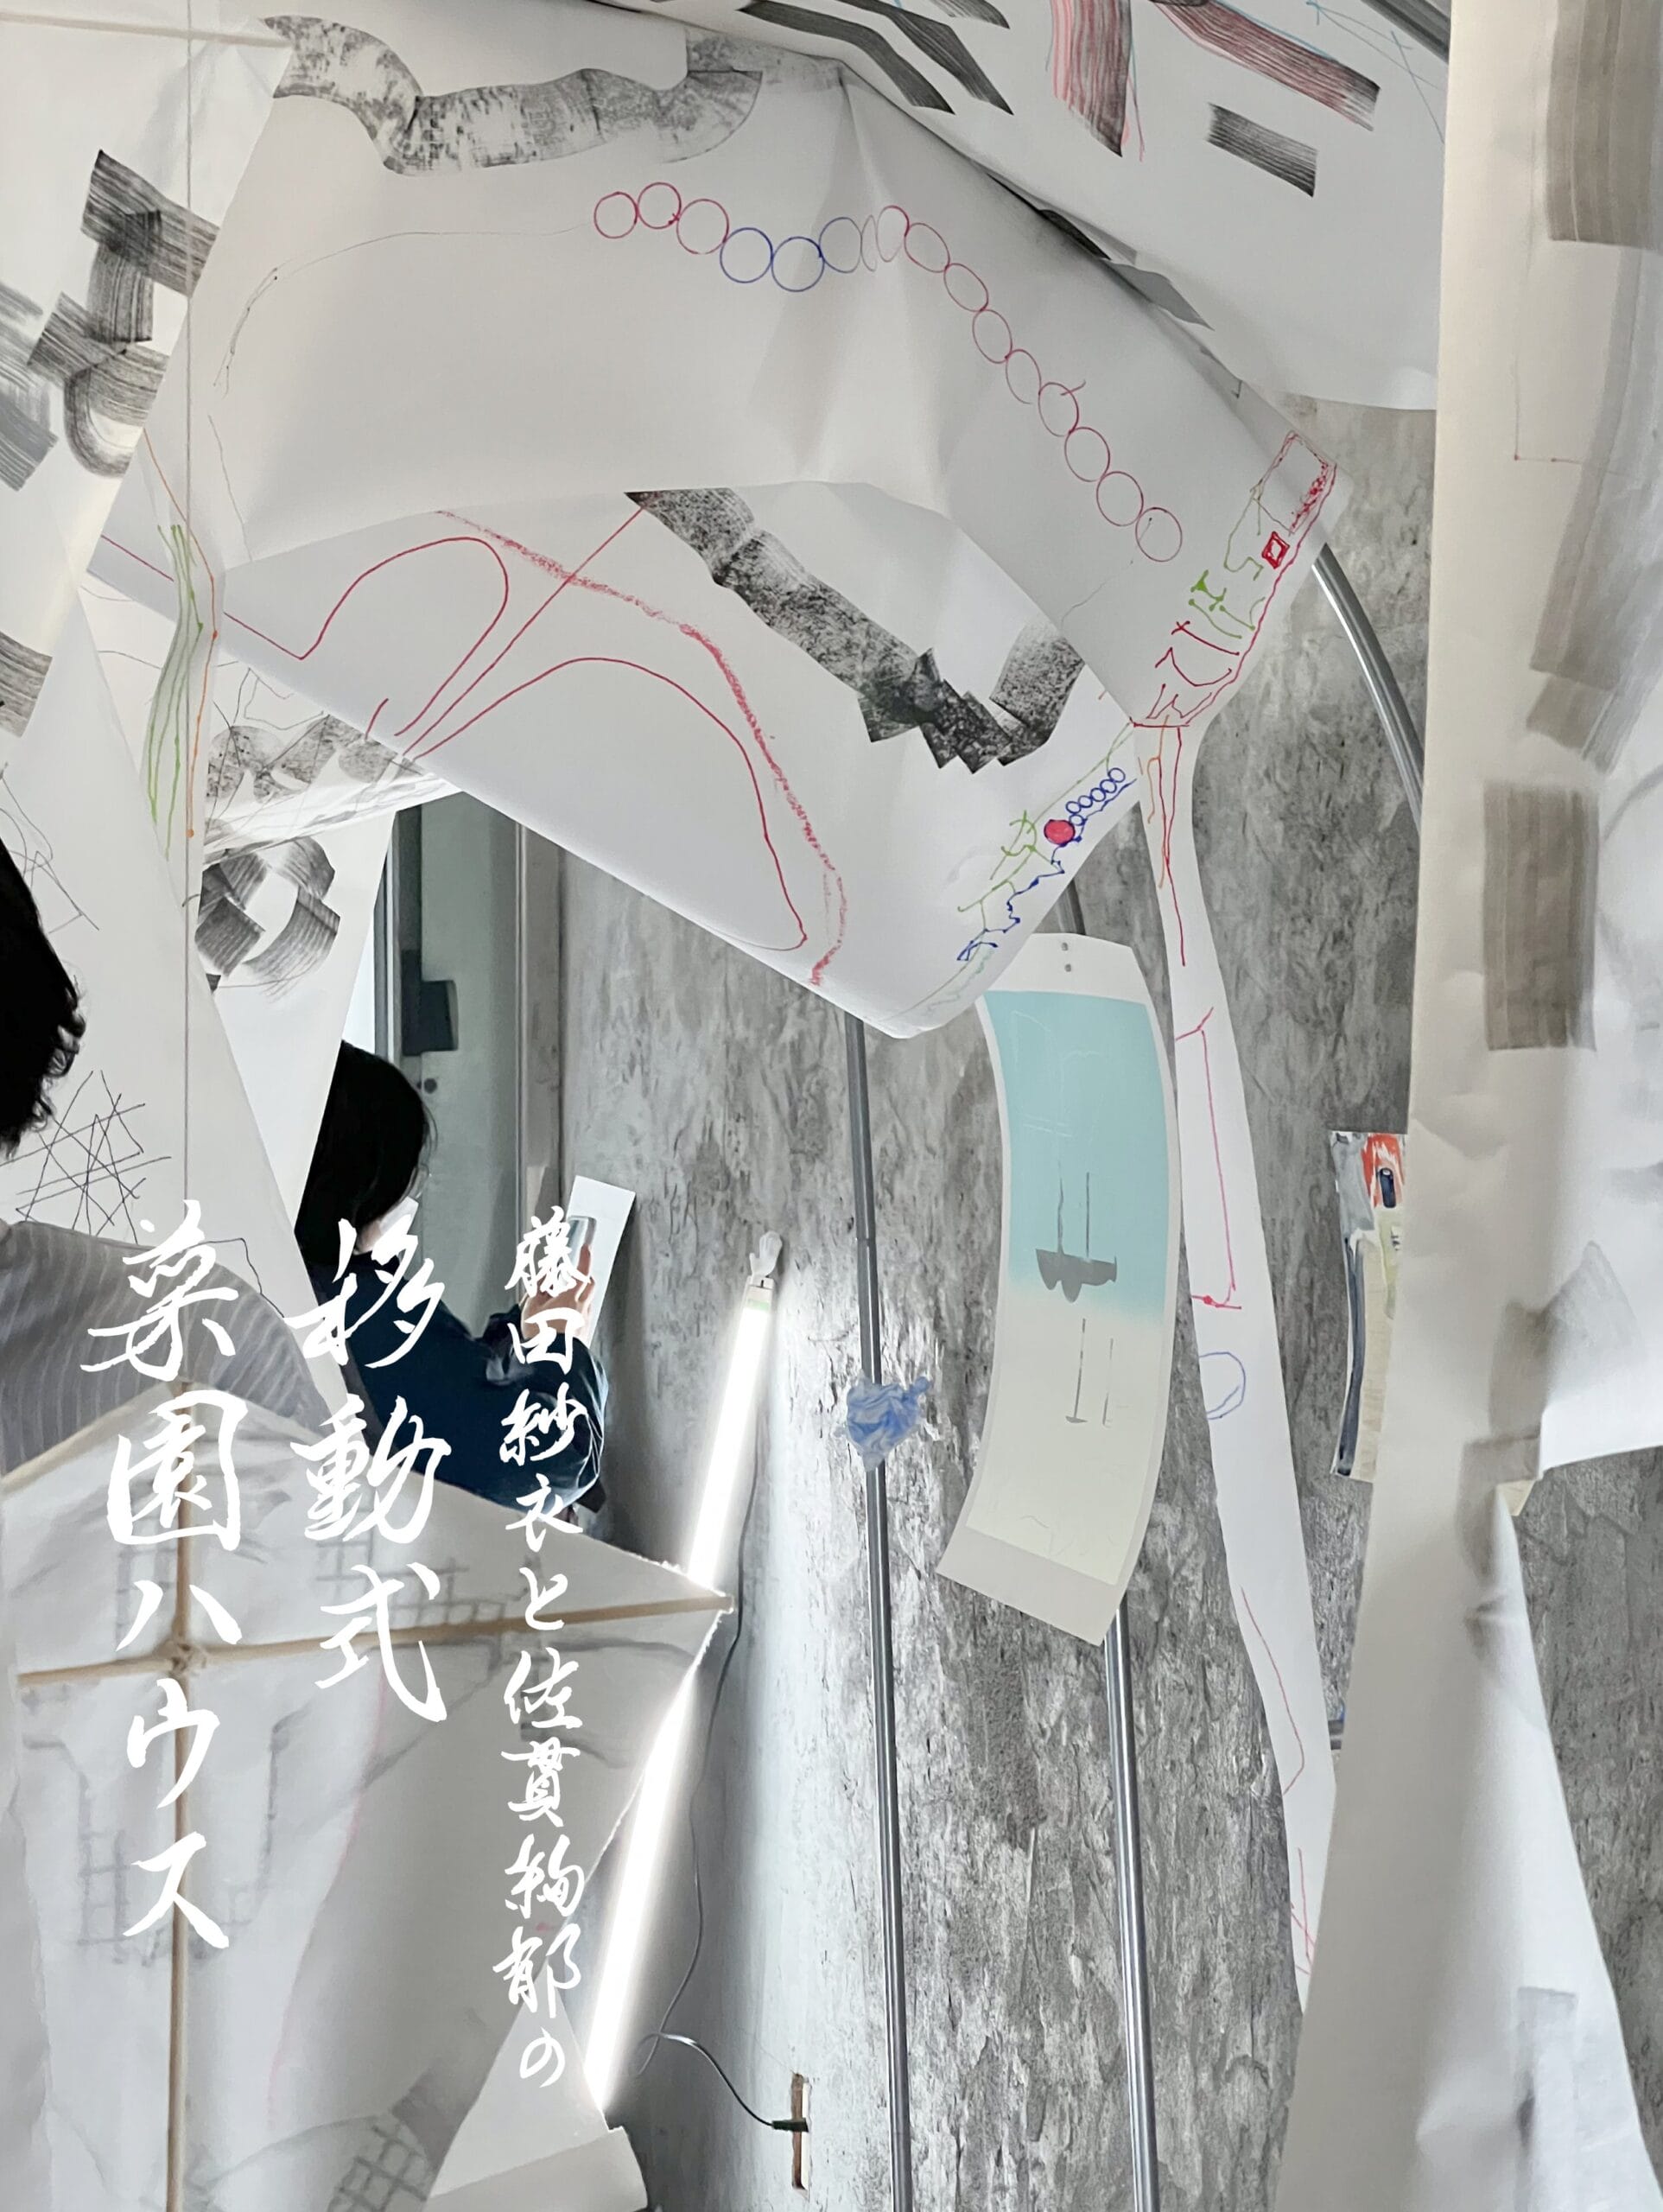 展覧会「藤田紗衣と佐貫絢郁の移動式菜園ハウス」を記録したアート